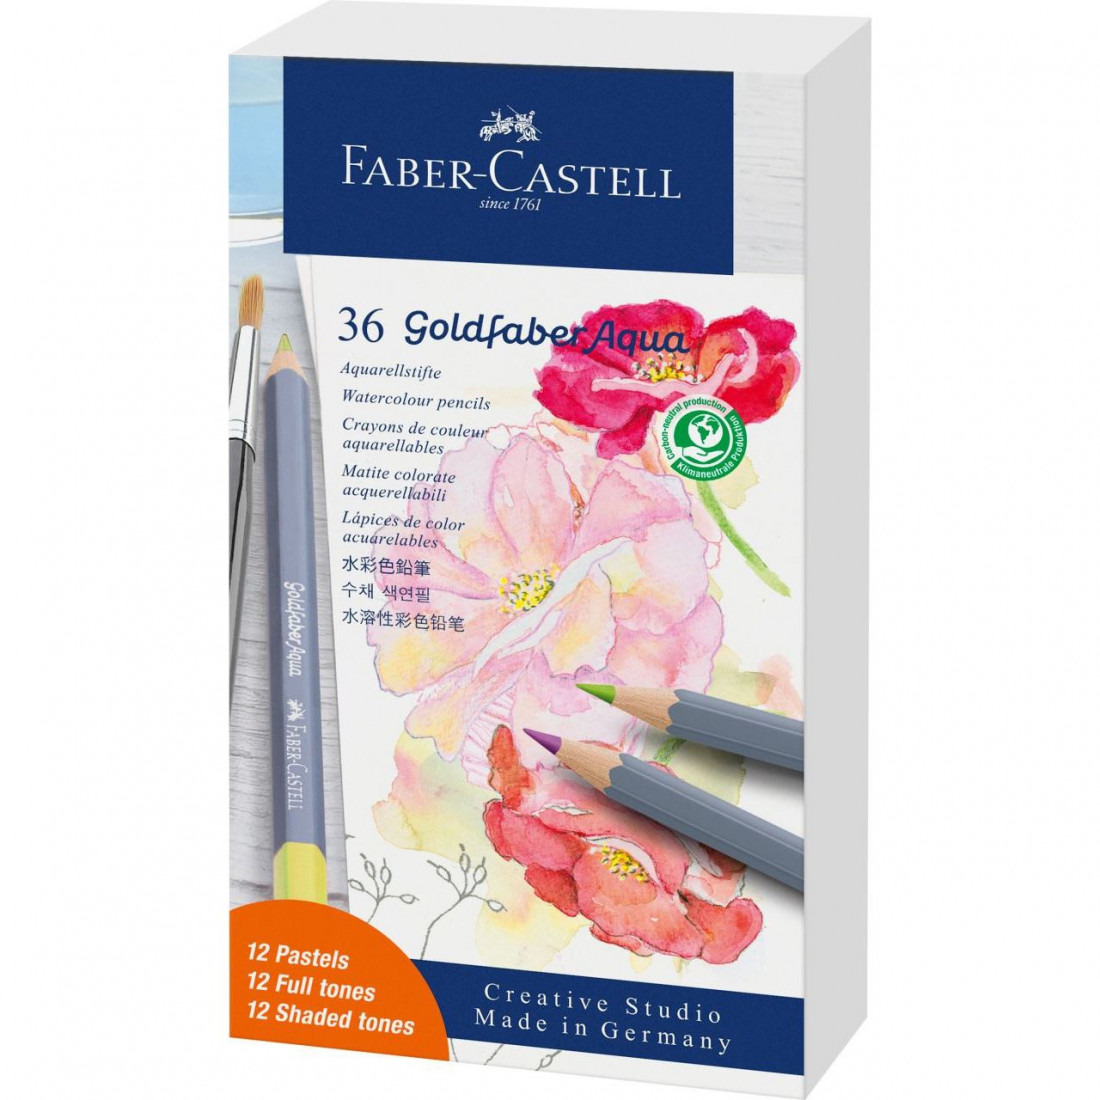 Faber Castell  Goldfaber Aqua watercolour pencil gift set, 36 pieces 114639